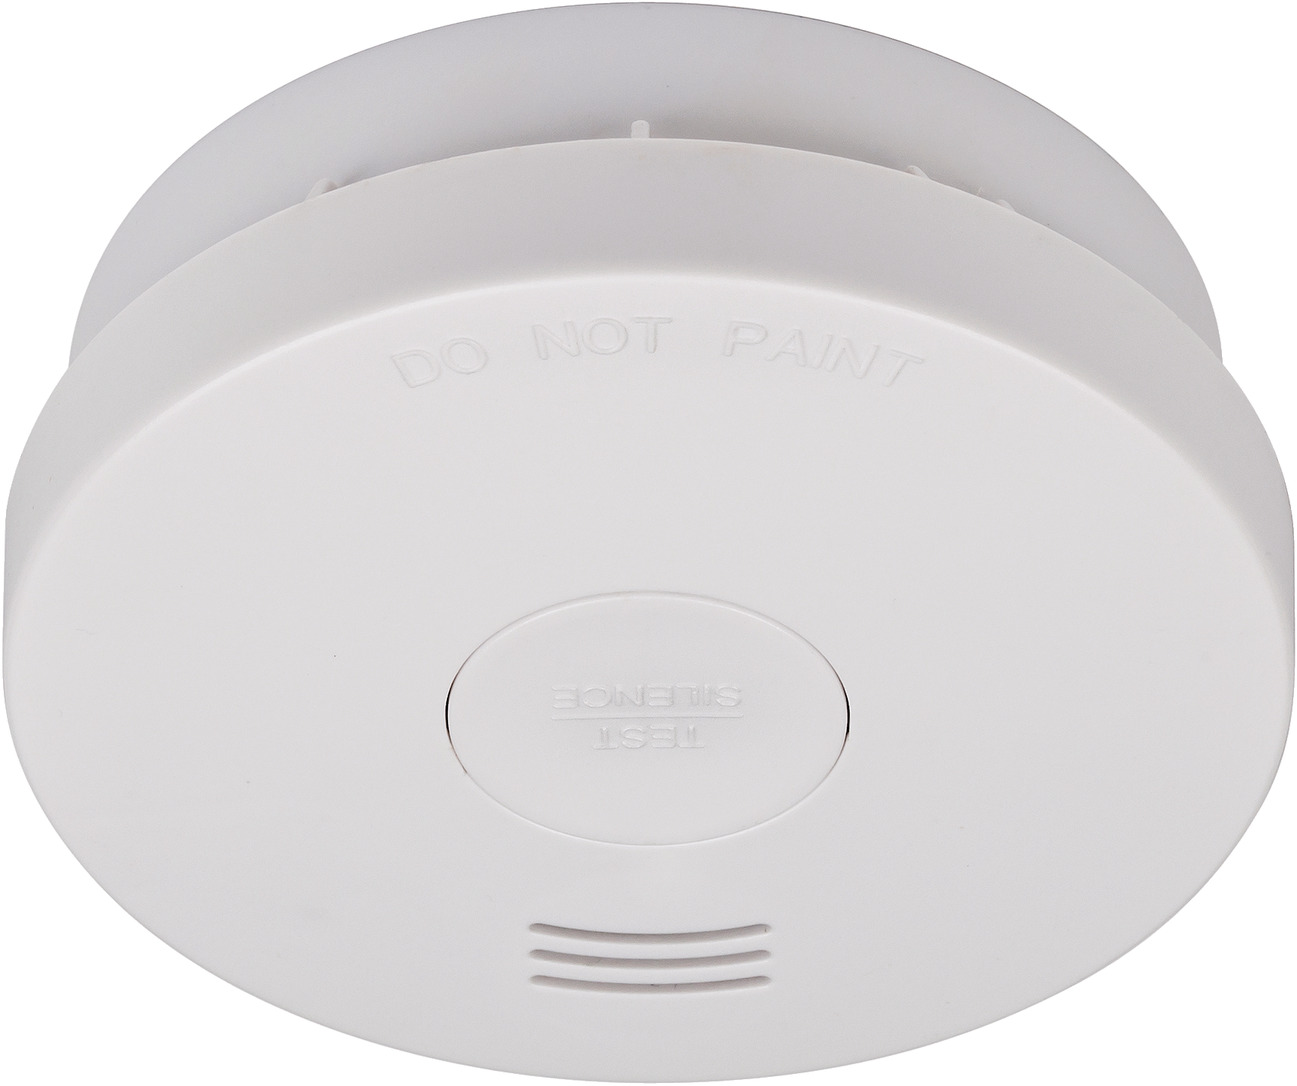 Sensor de humo WiFi inteligente con batería incorporada - Alarmas para Casa